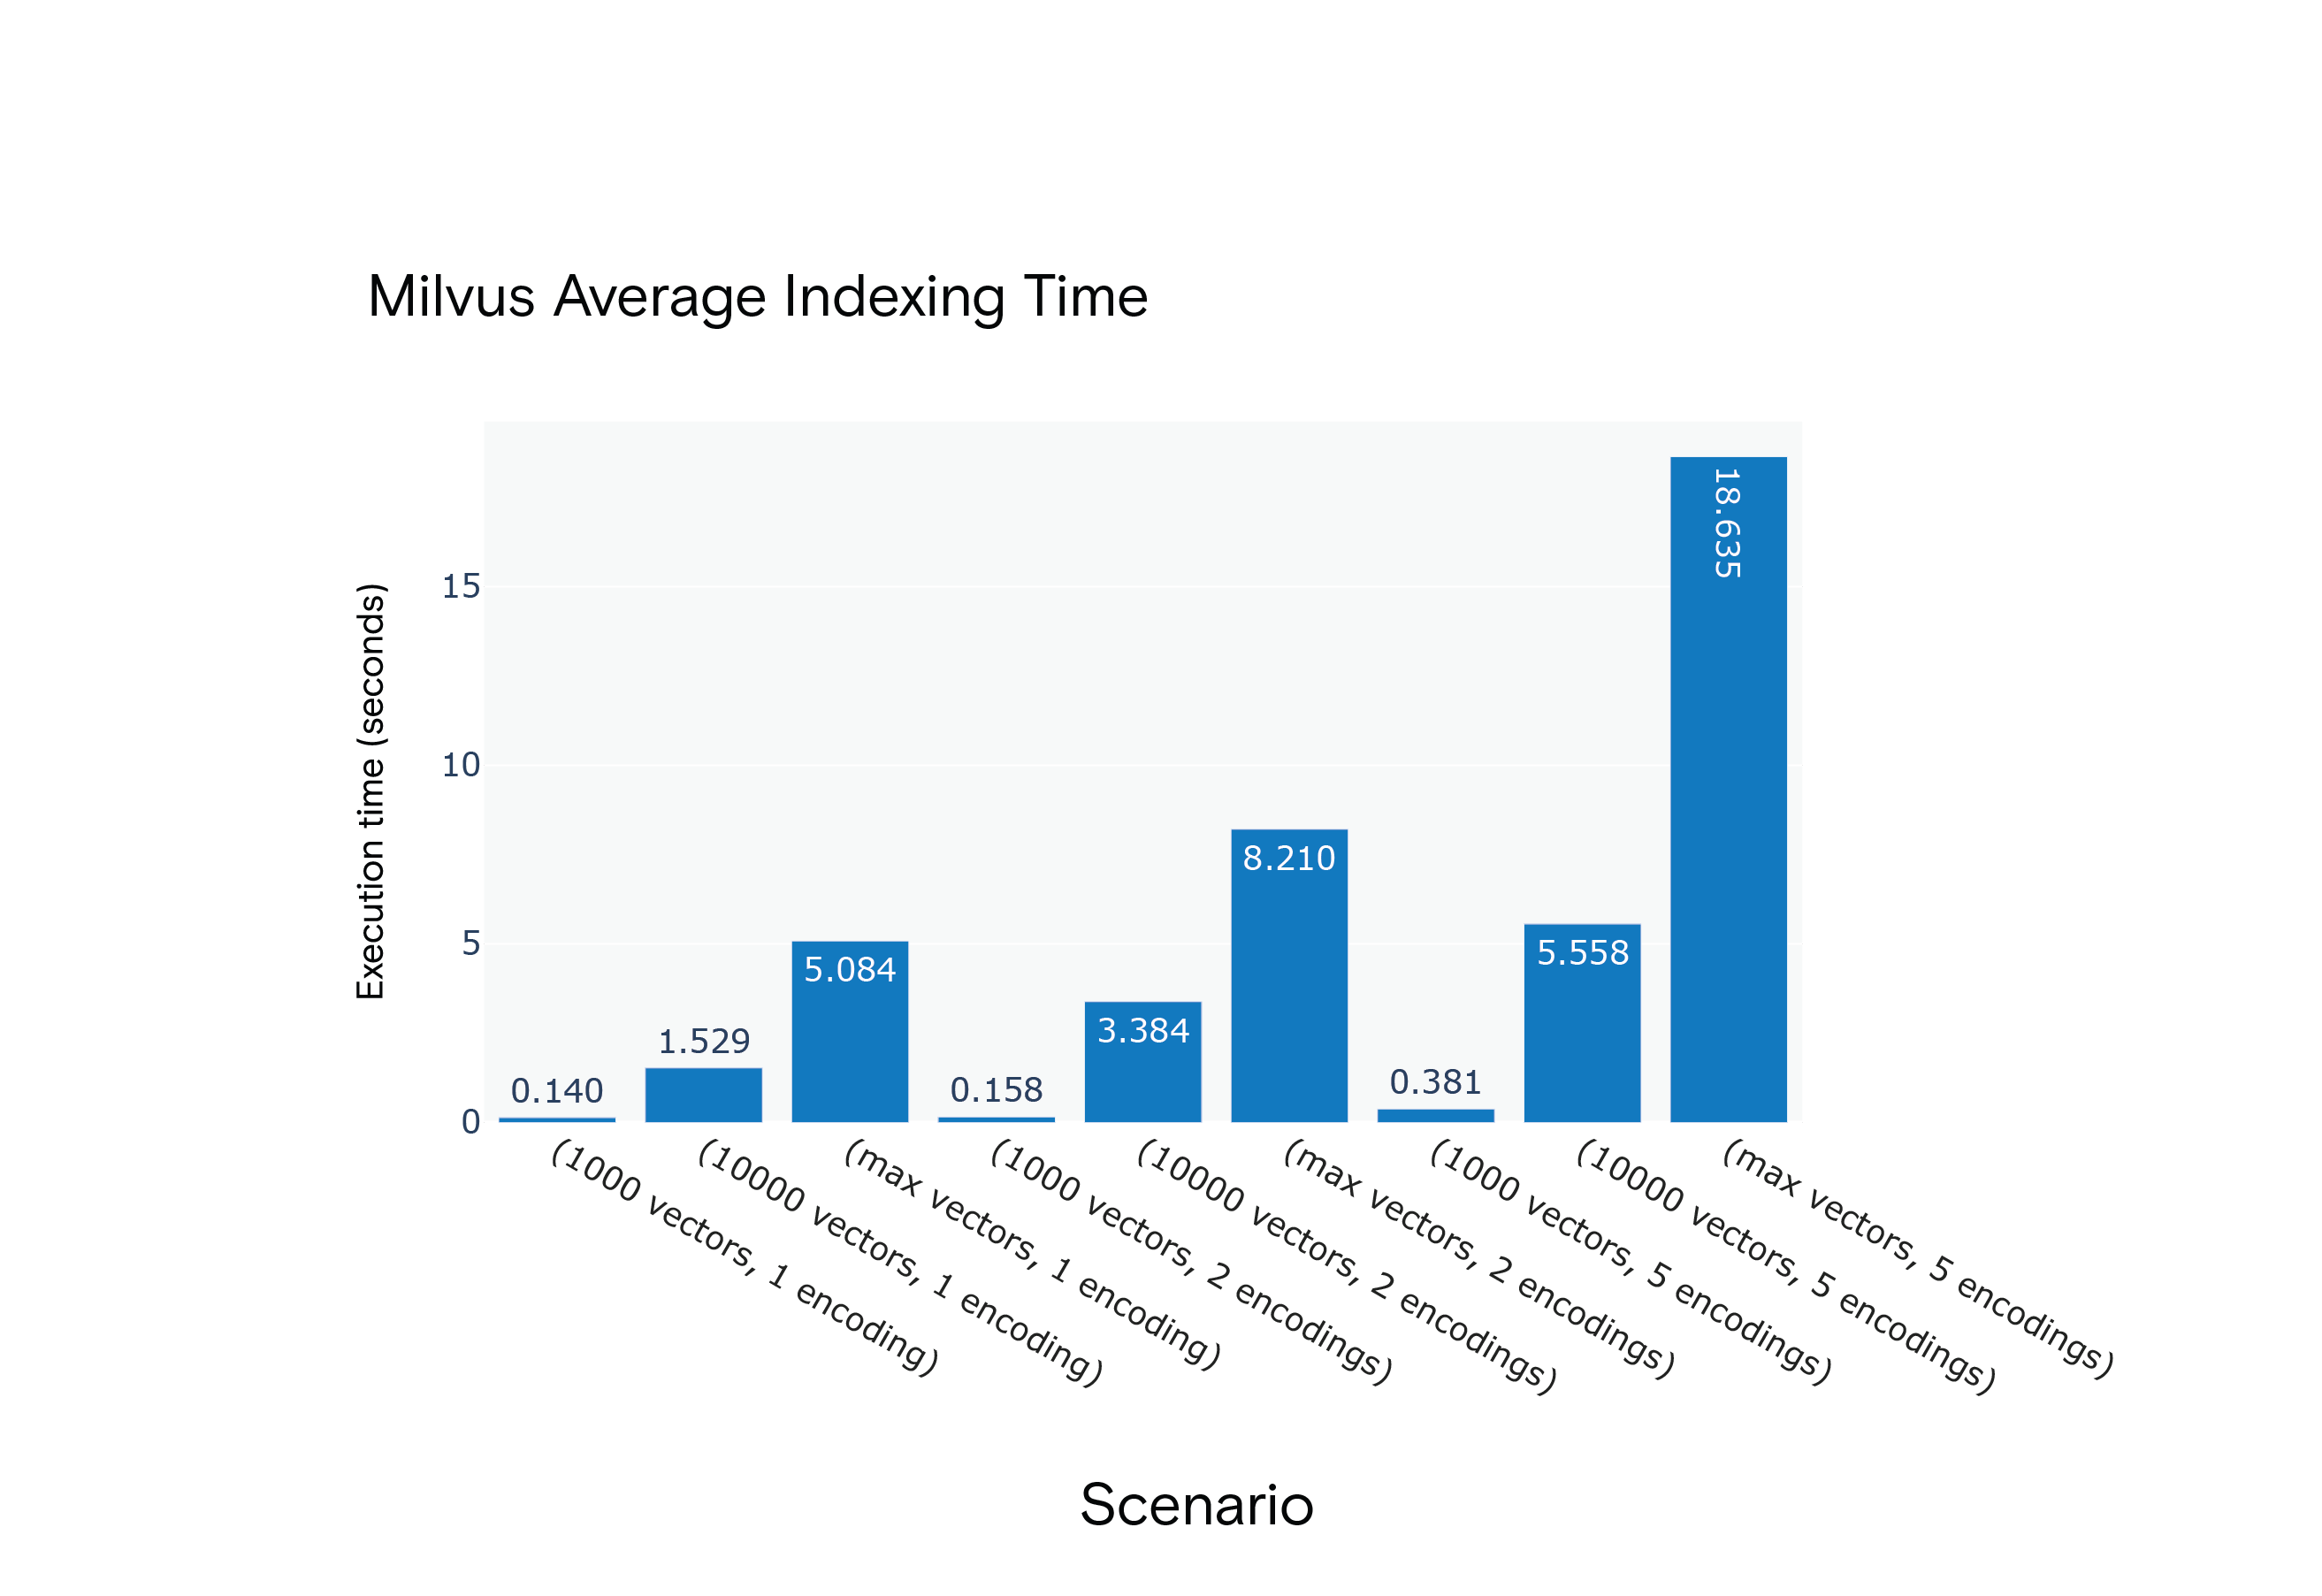 Milvus 1.1.1 Average Indexing Time for Scenarios S1 through S9